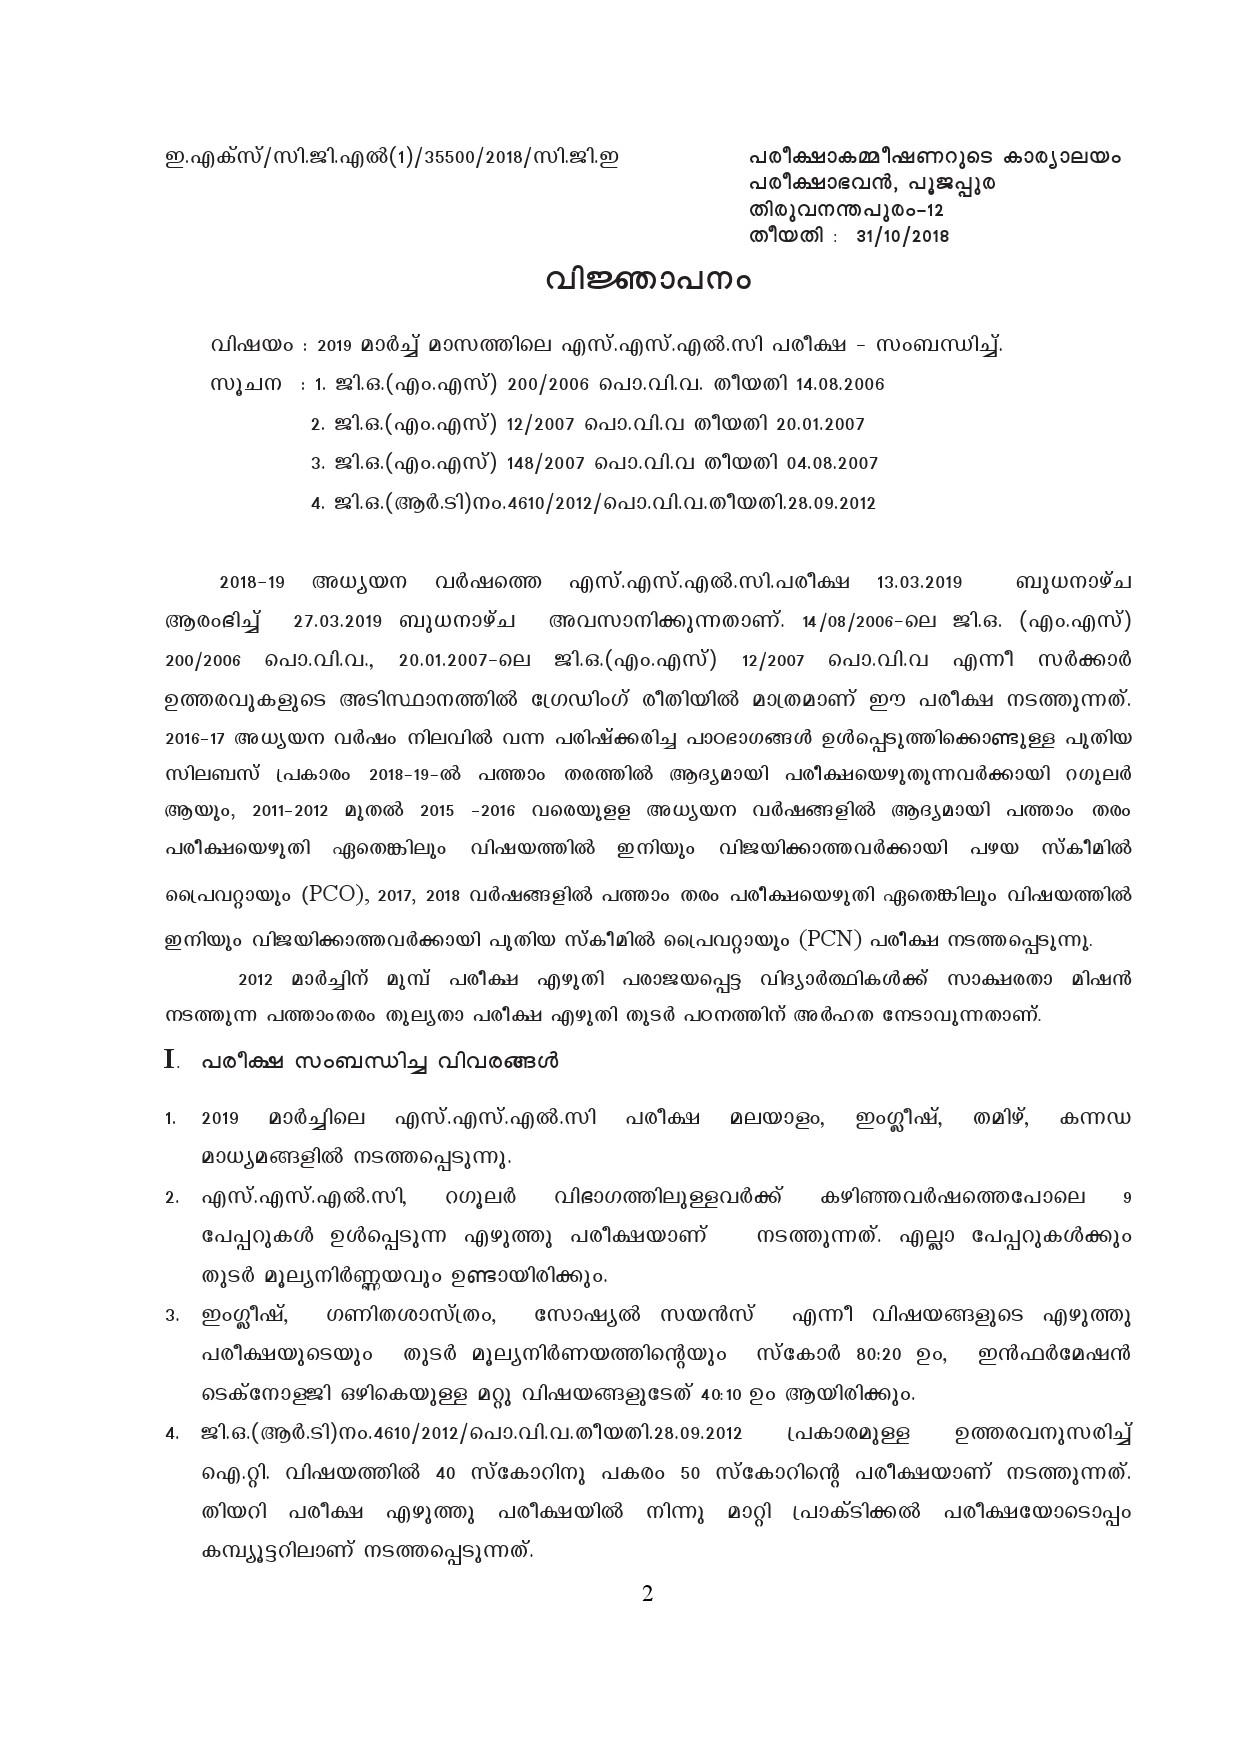 Kerala SSLC Exam Result 2019 - Notification Image 2